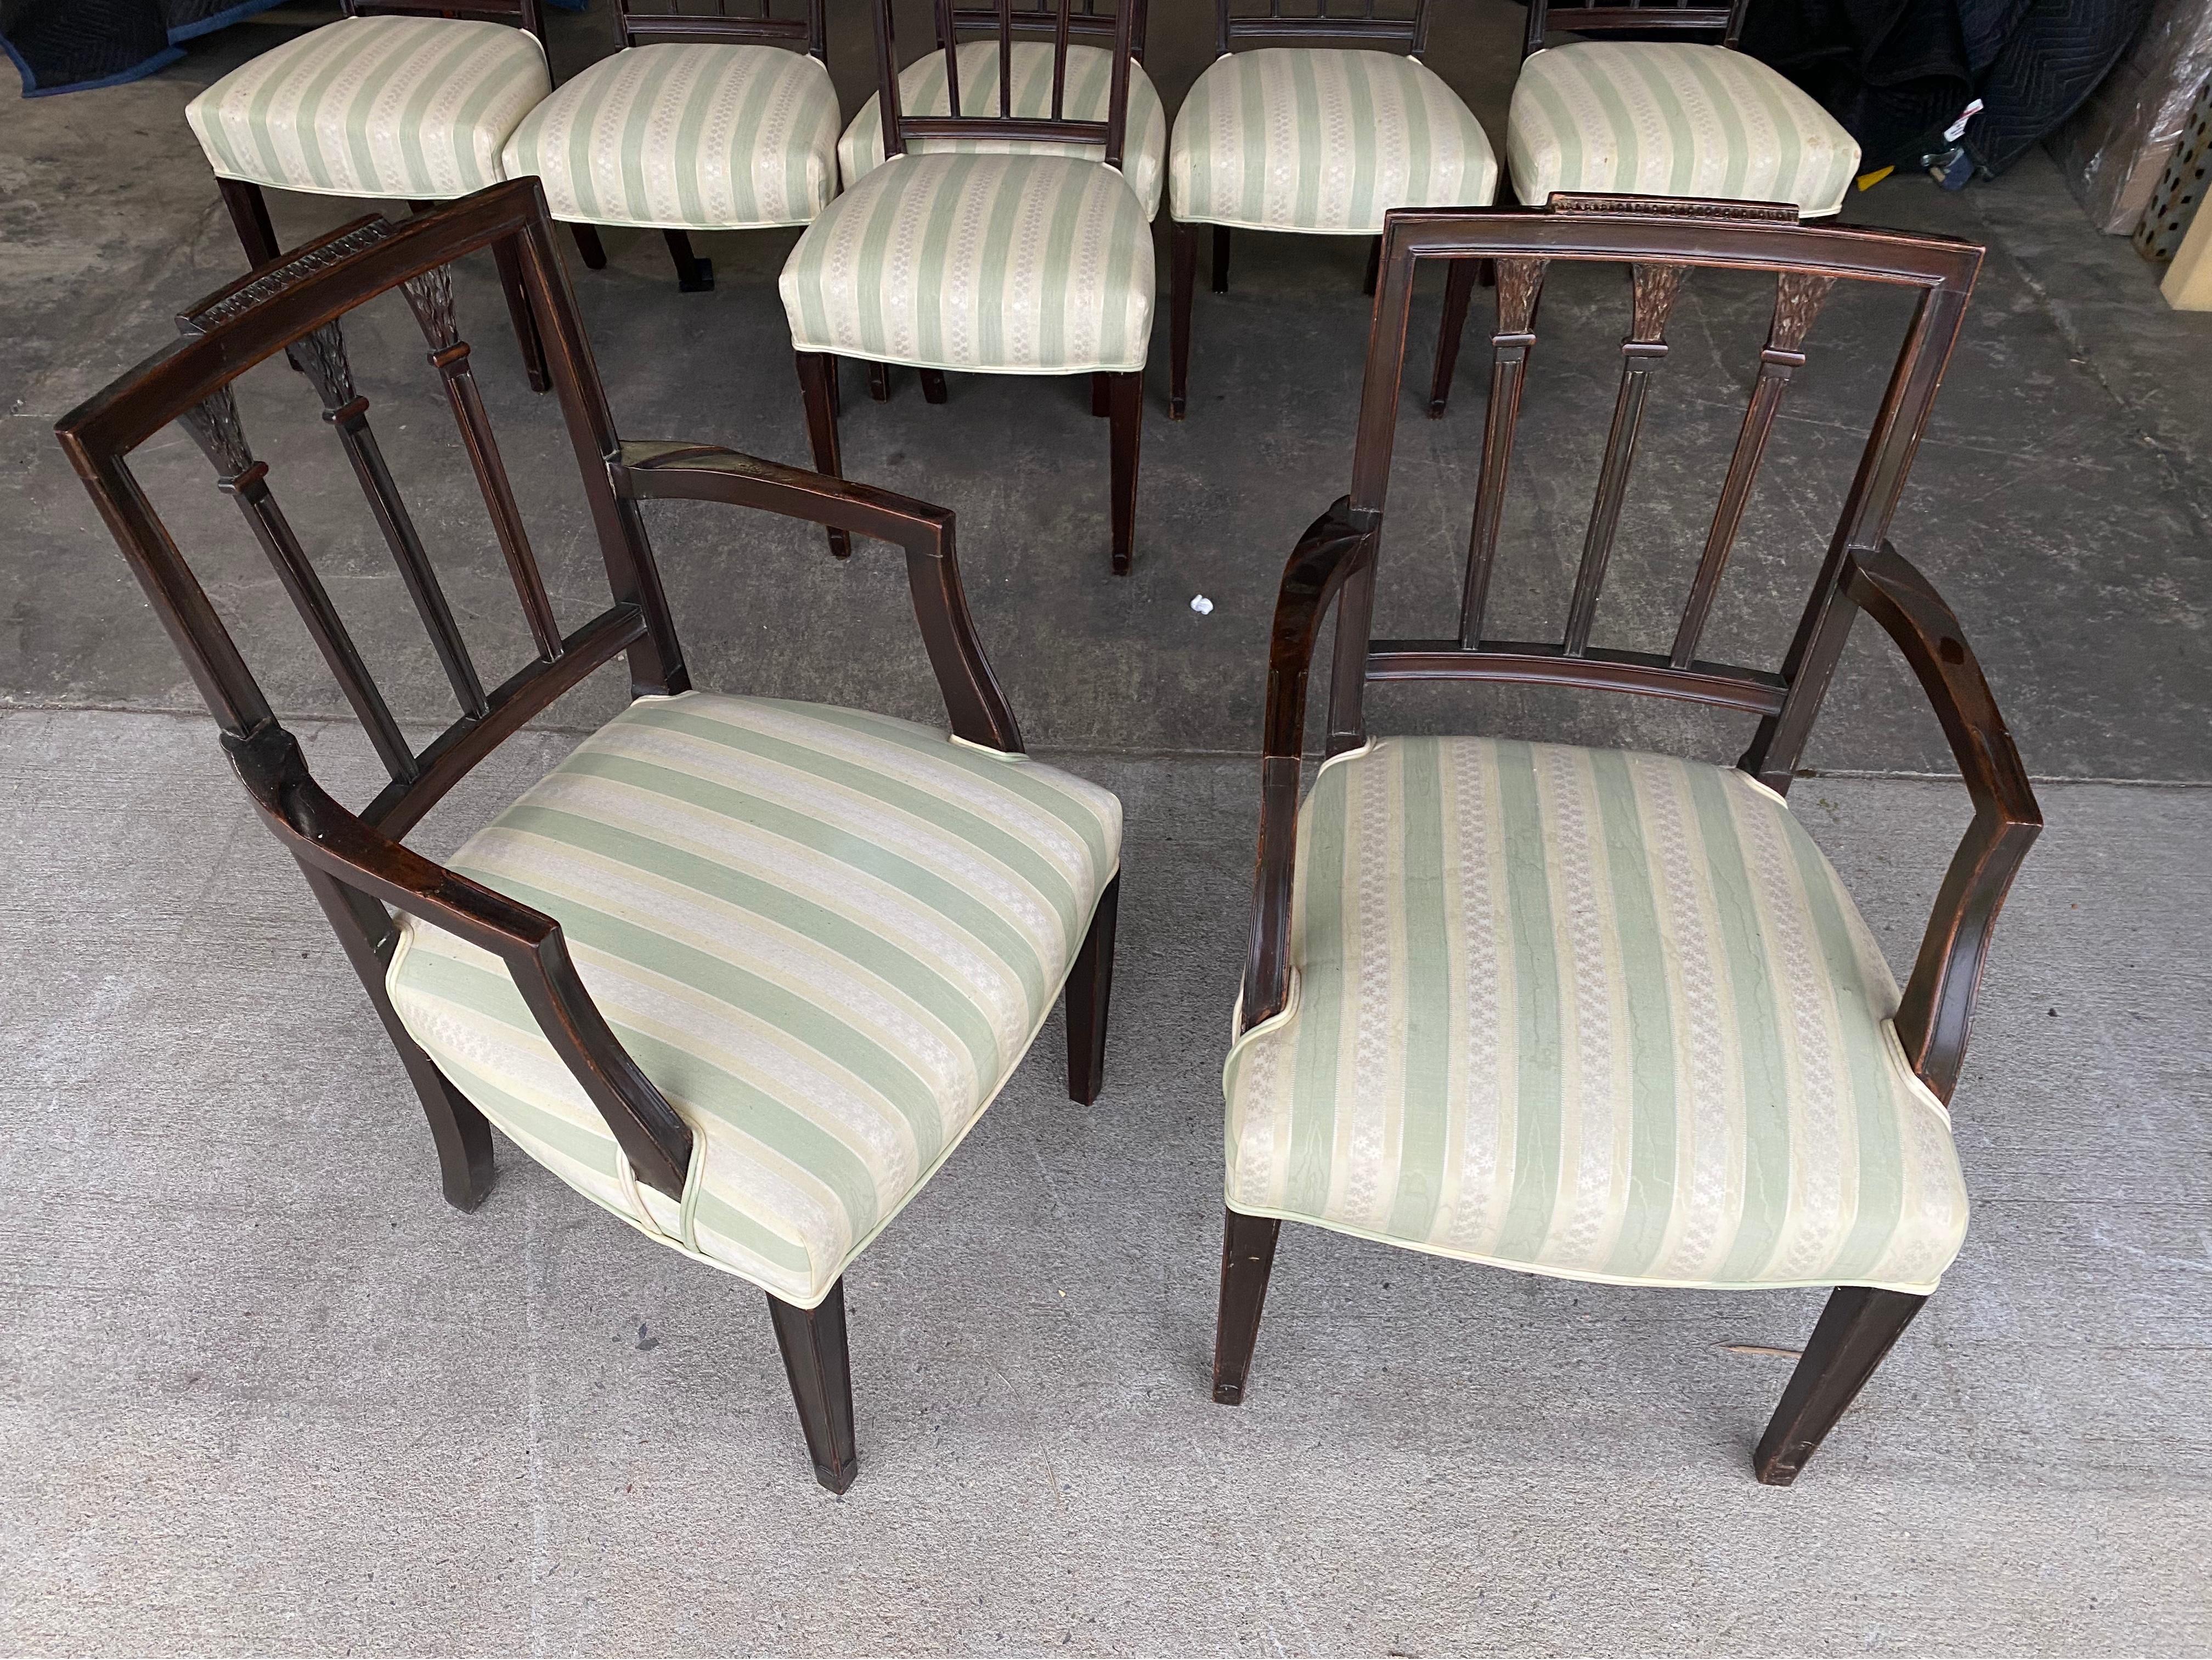 Toller Satz von 8 englischen Mahagoni-Esszimmerstühlen aus dem 19. Jahrhundert. Zwei Sessel und sechs Beistellstühle. Alle in gutem Zustand. Polsterung hat ein paar Flecken und könnte neu gemacht werden oder Bezüge gemacht haben. 

Maße: